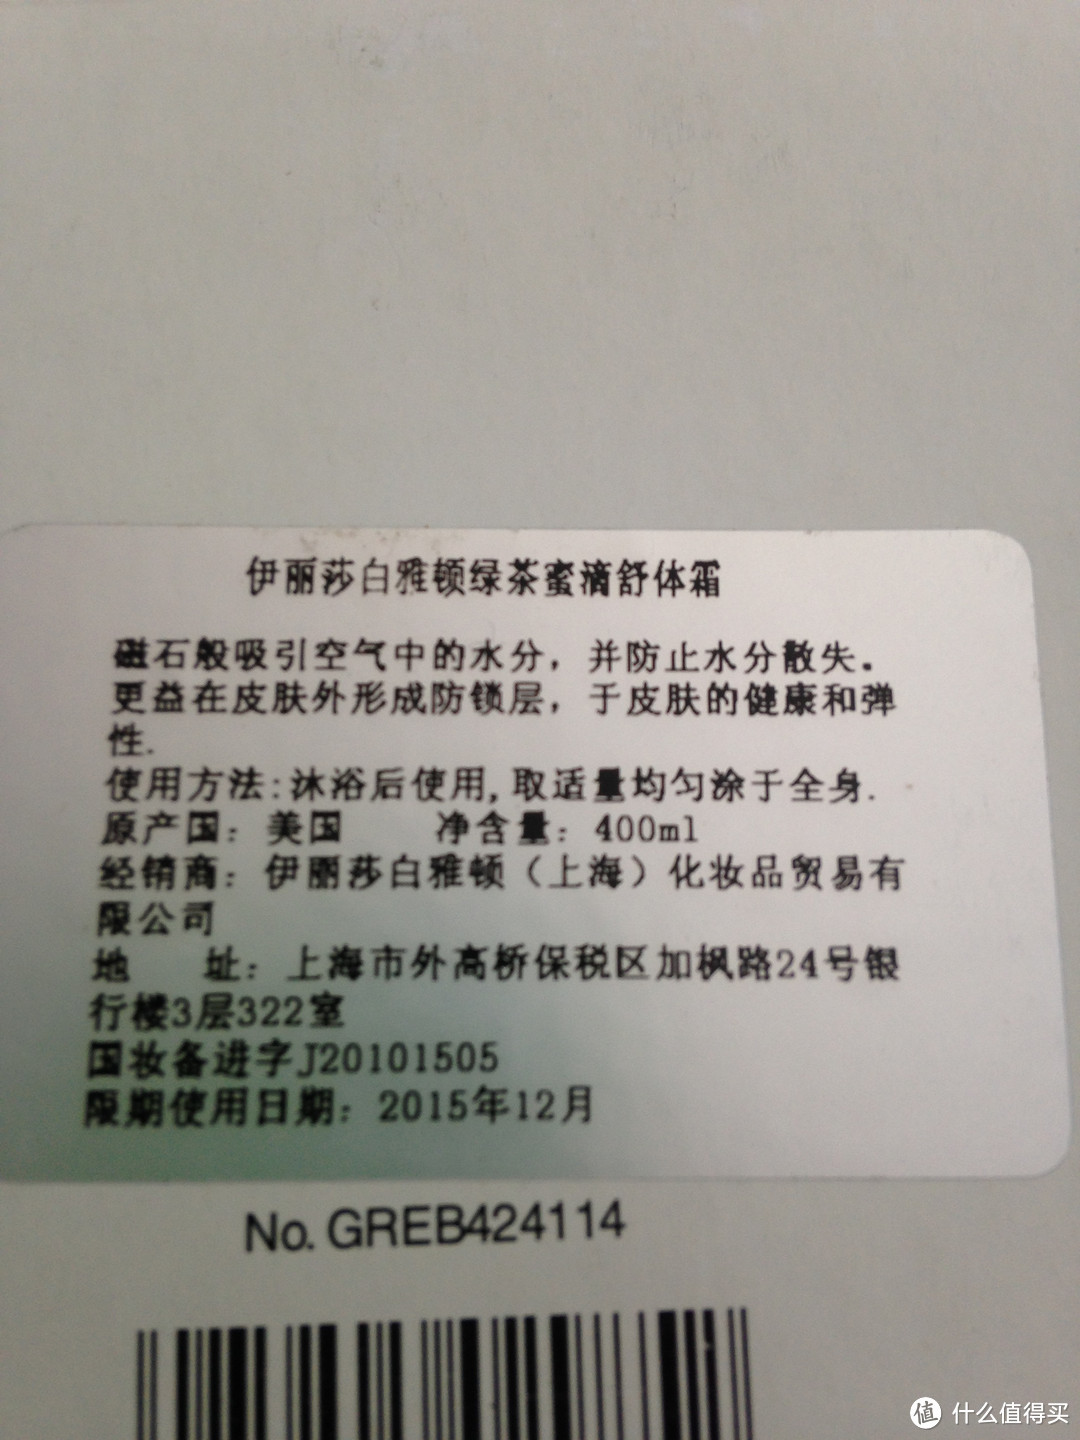 盒子外的中文说明，上有国妆备进字J20101505，保质期为2015年12月